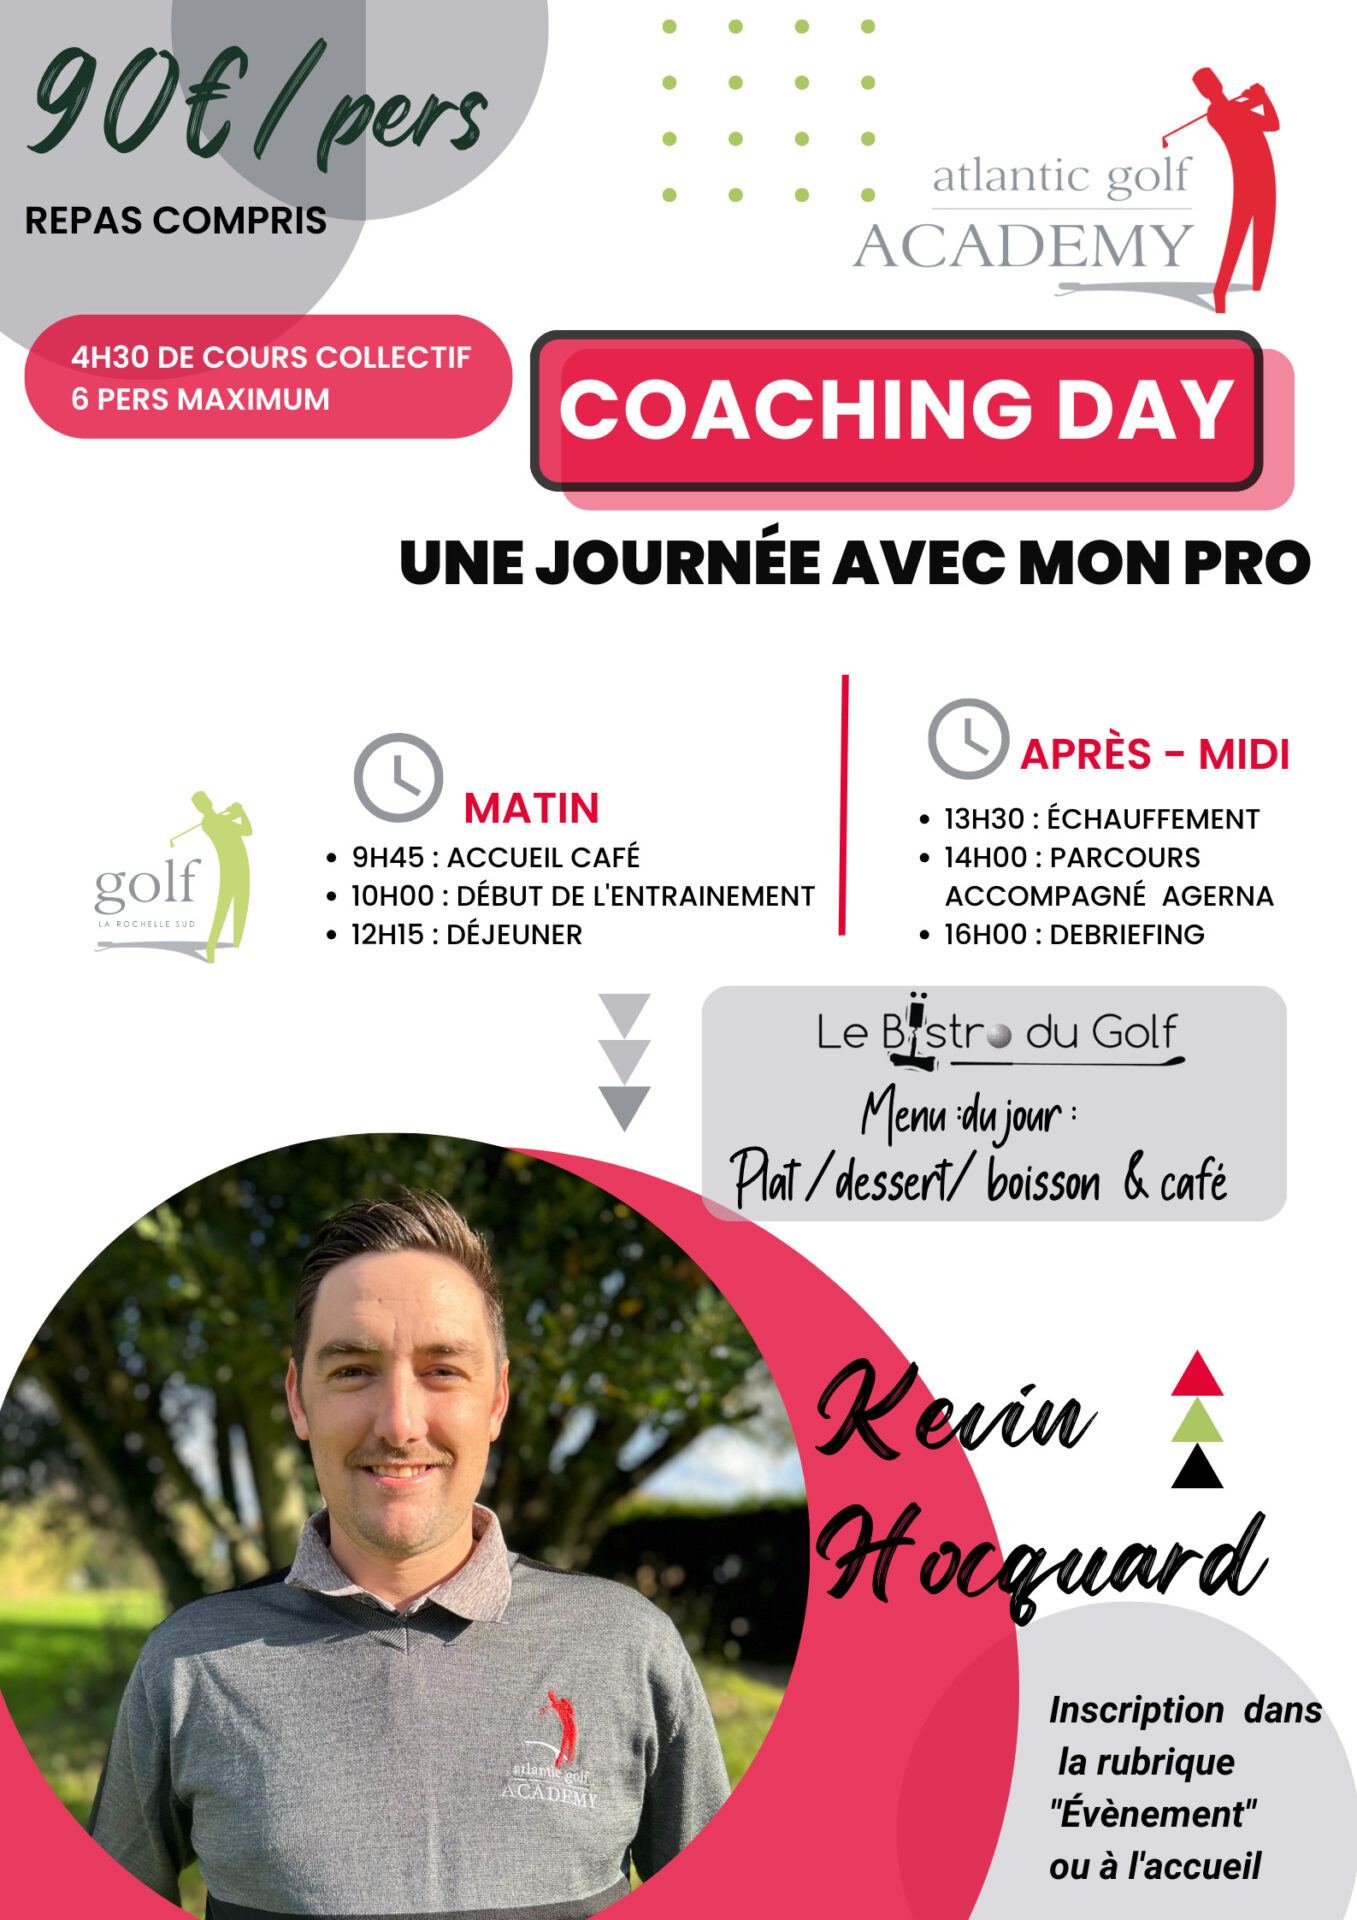 Coaching Day - Kévin Hocquard